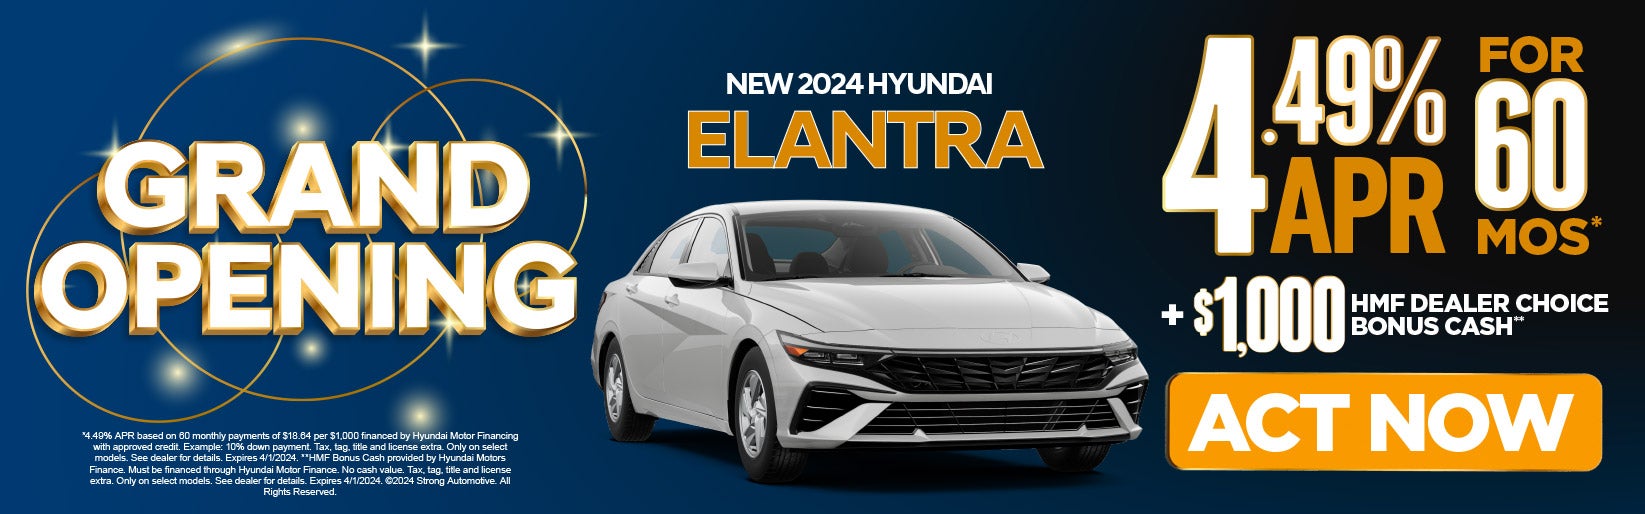 New 2024 Hyundai Elantra 4.49% APR for 60 Mos*